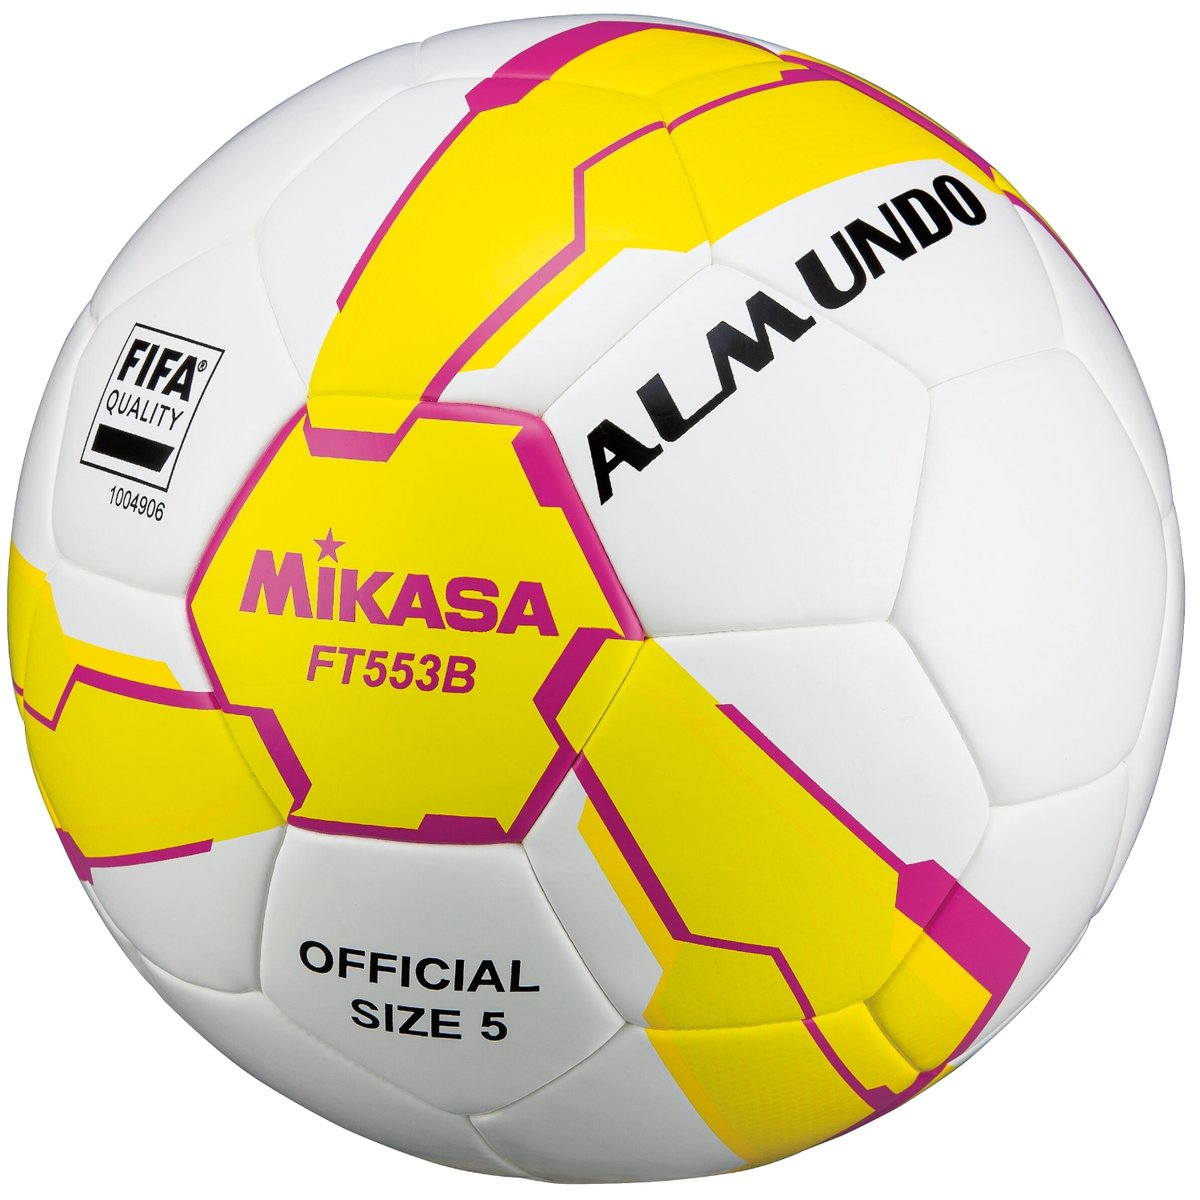 Mikasa FT553B-YP FIFA Quality Ball FT553B, unisex, piłki do piłki nożnej, Białe